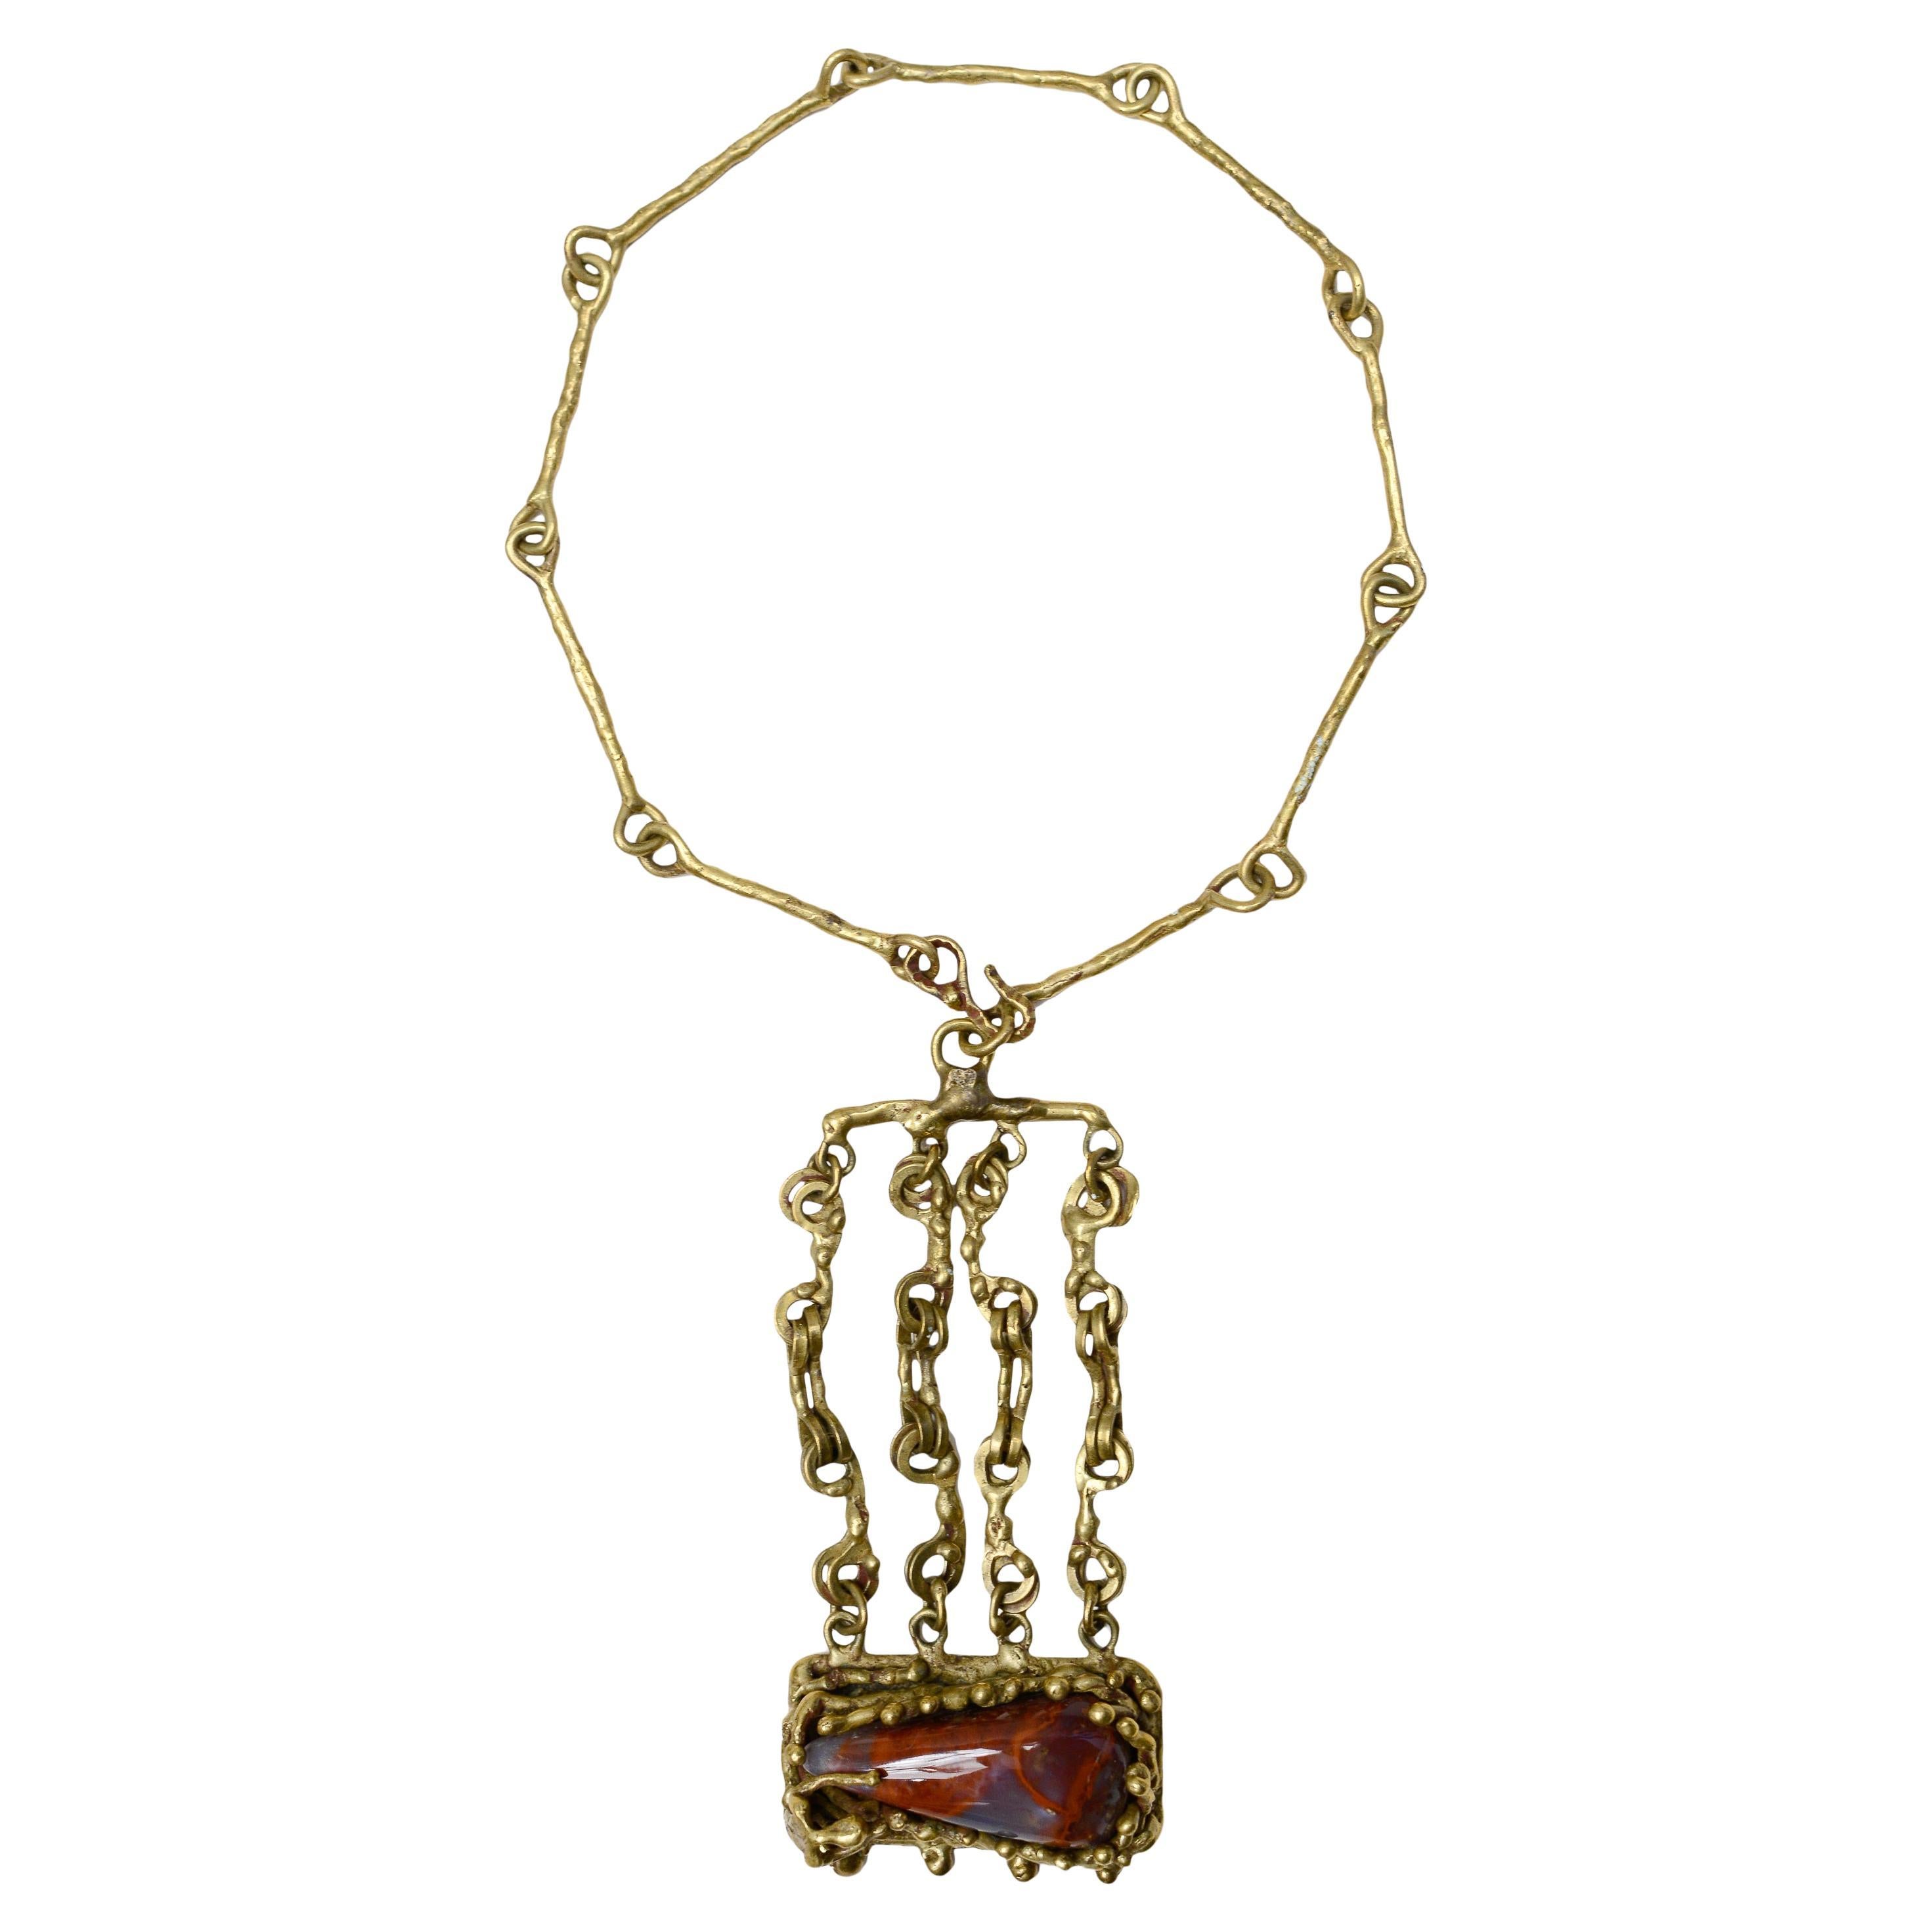 Pal Kepenyes Bronze & Jasper Modernist Necklace For Sale